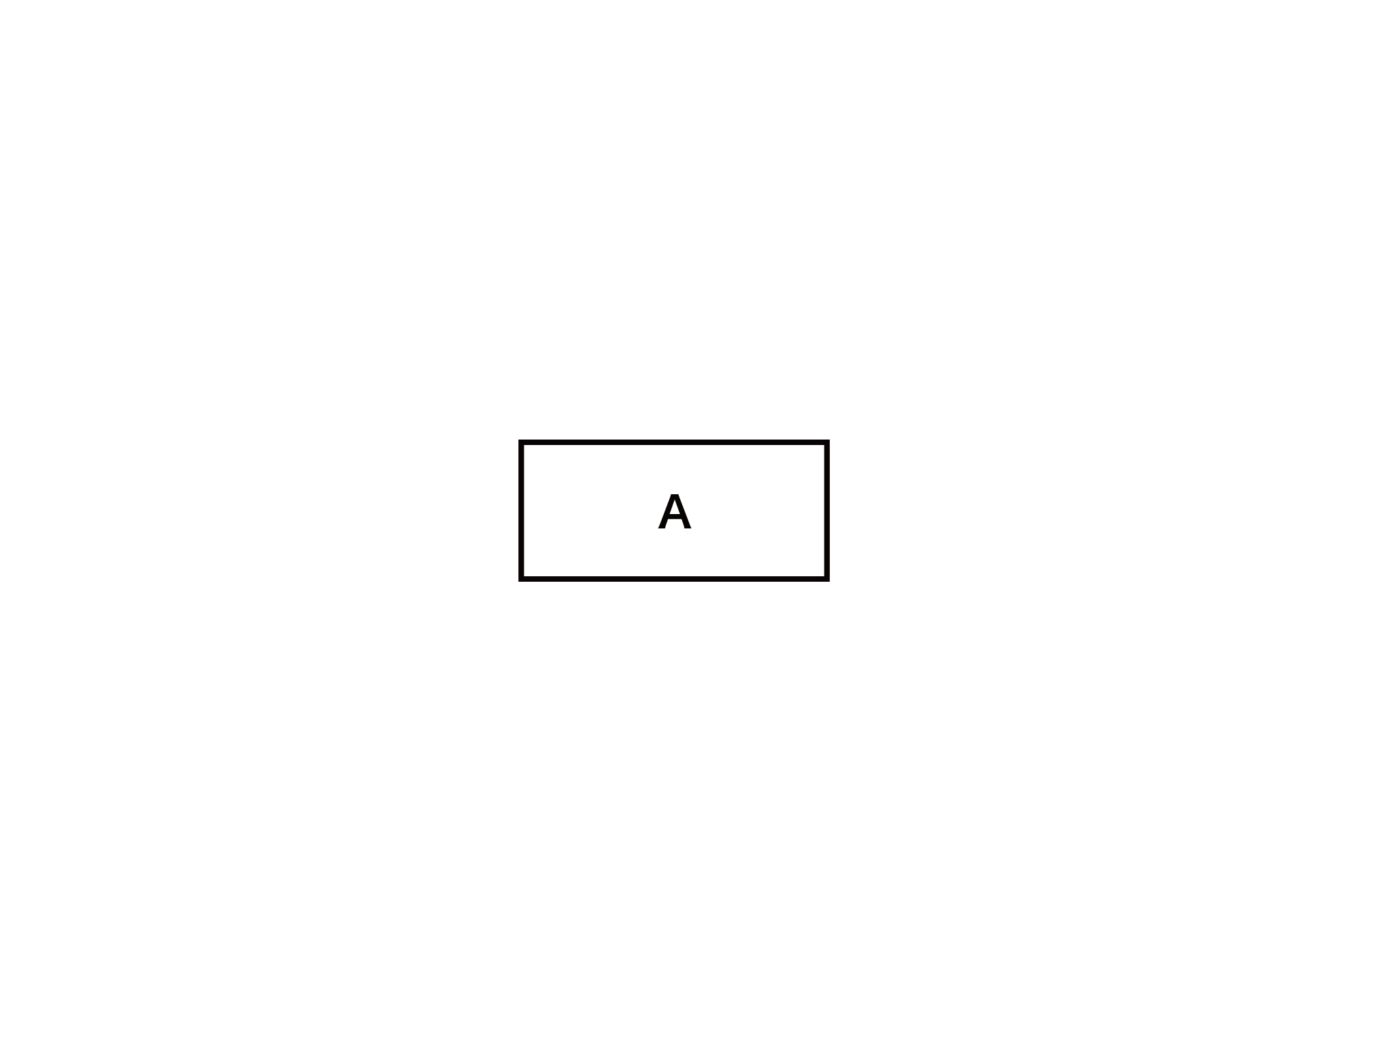 図。四角にAと書かれていて、クラスが一つだけのパターンを示している。